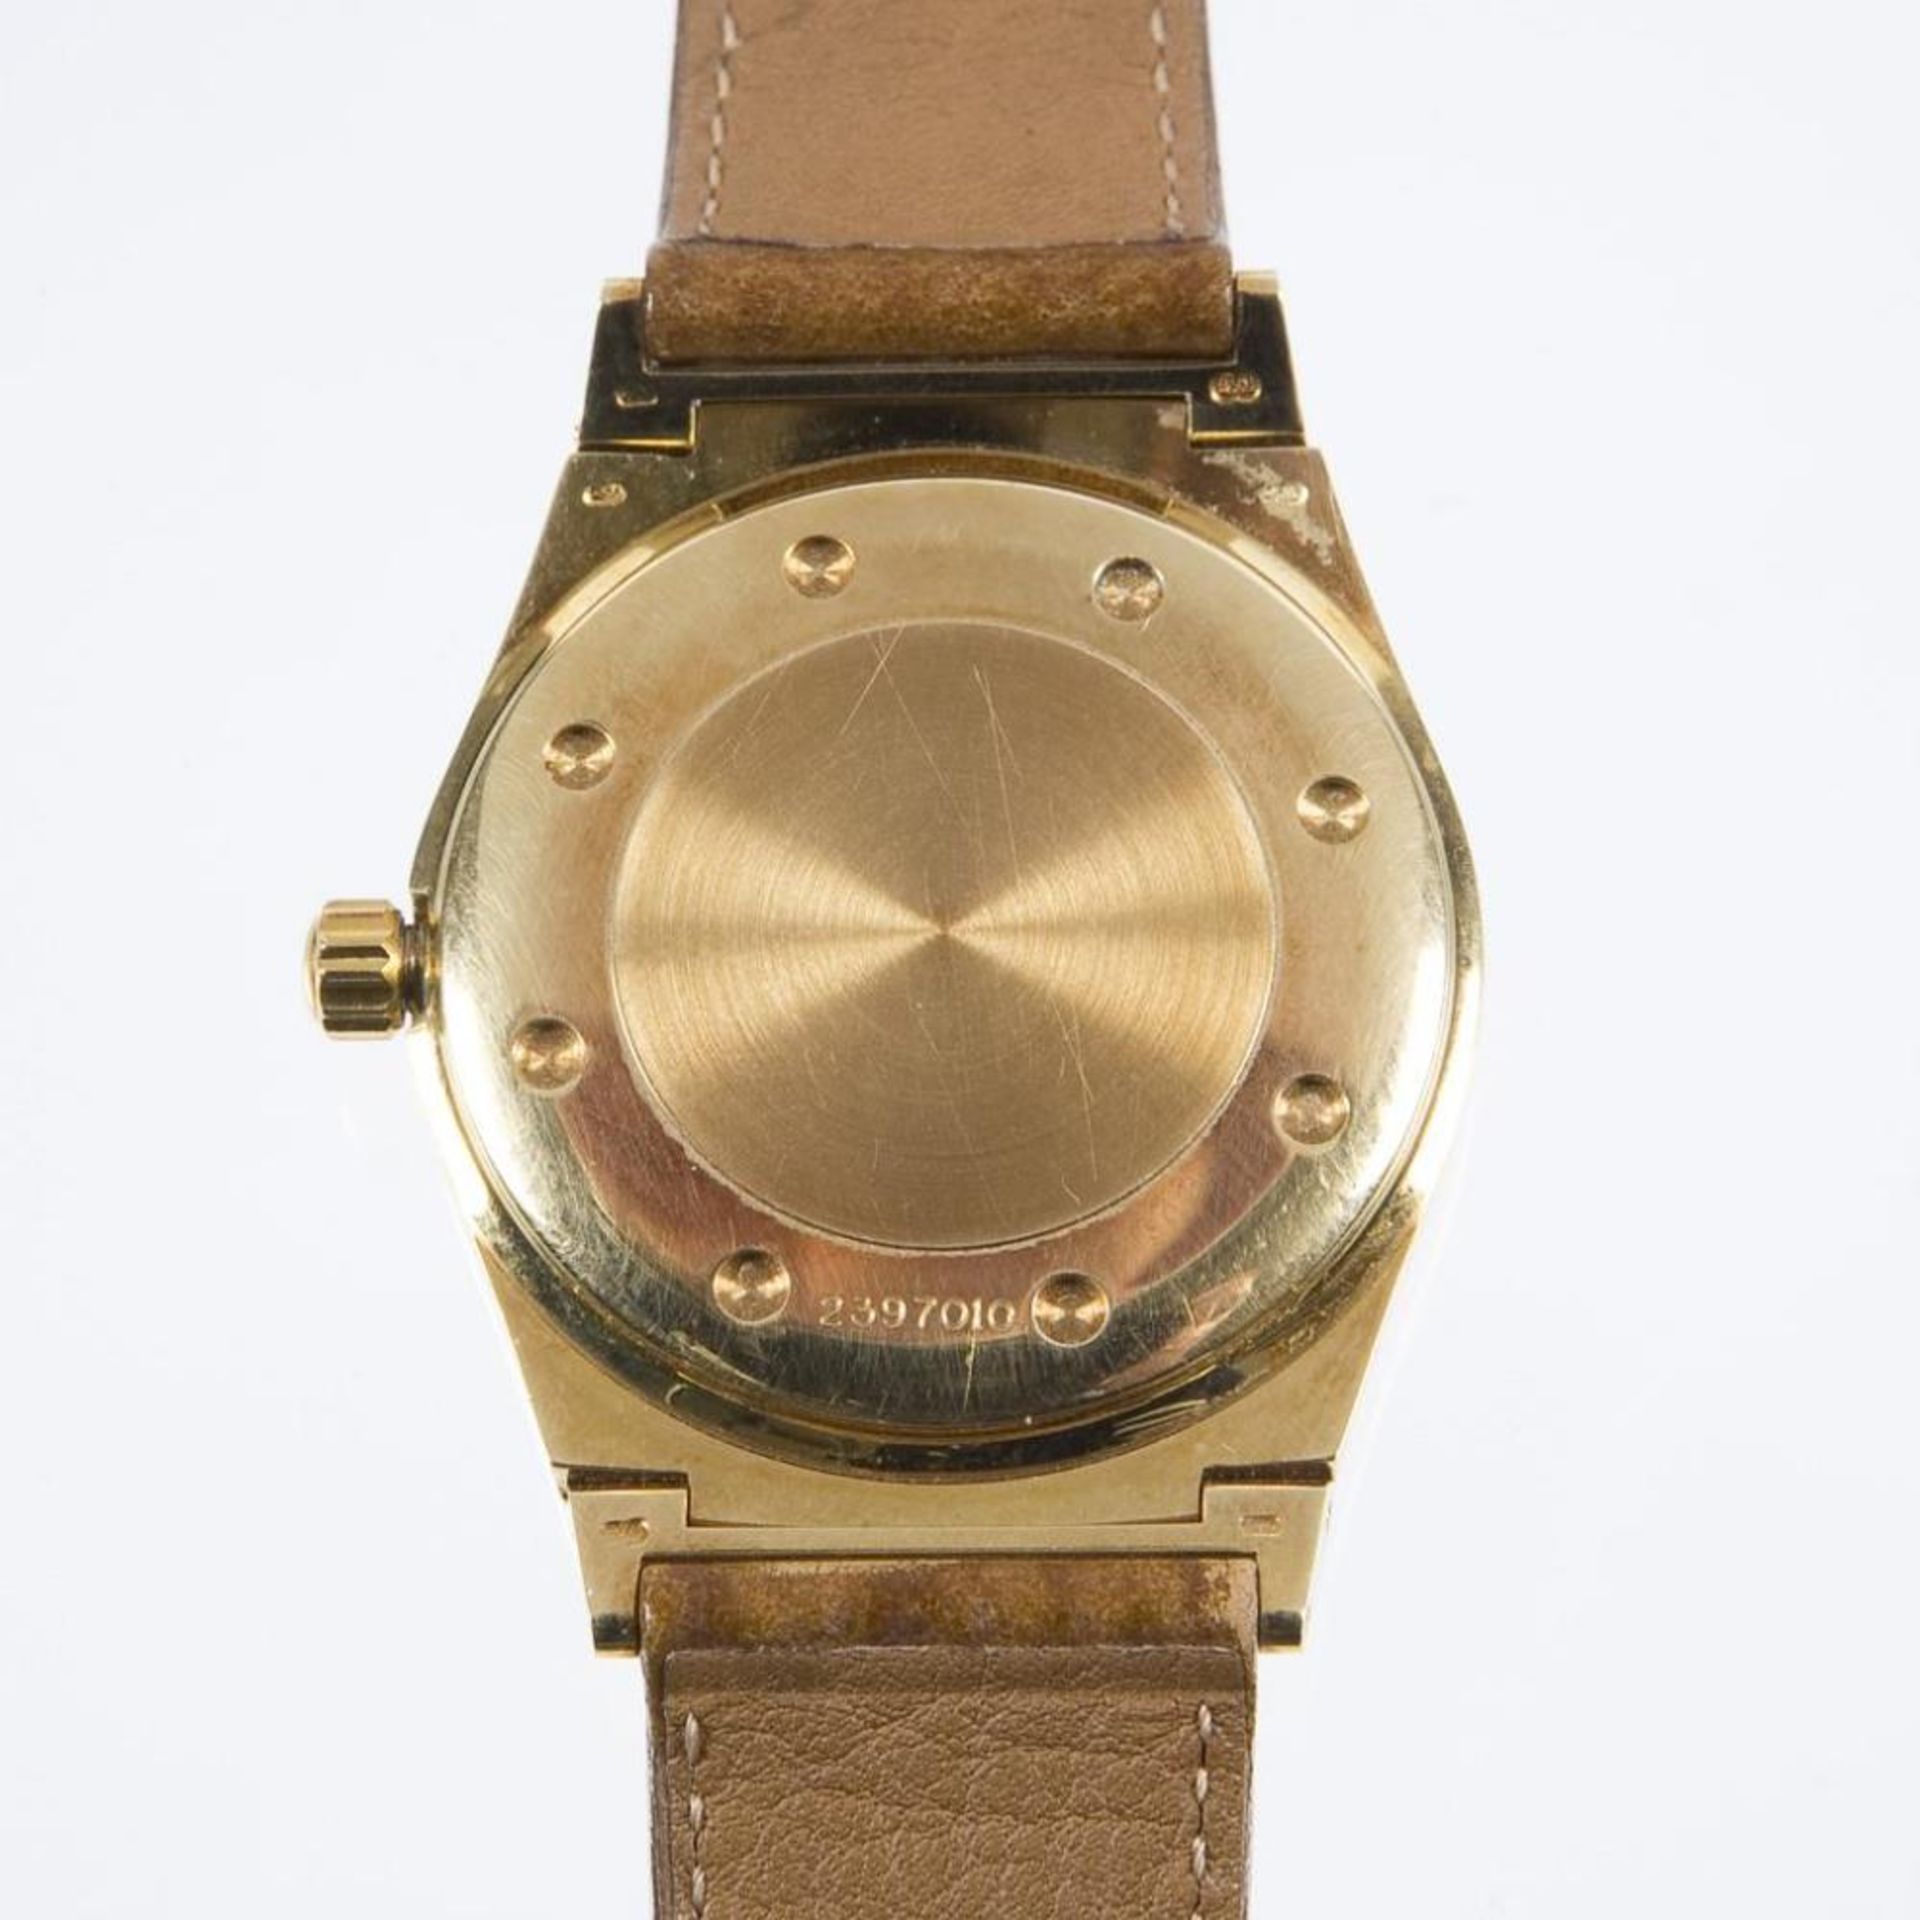 Armbanduhr: Ingenieur Perpetual Calendar in Gold.. IWC SCHAFFHAUSEN.| siehe Nachtrag - Bild 2 aus 6